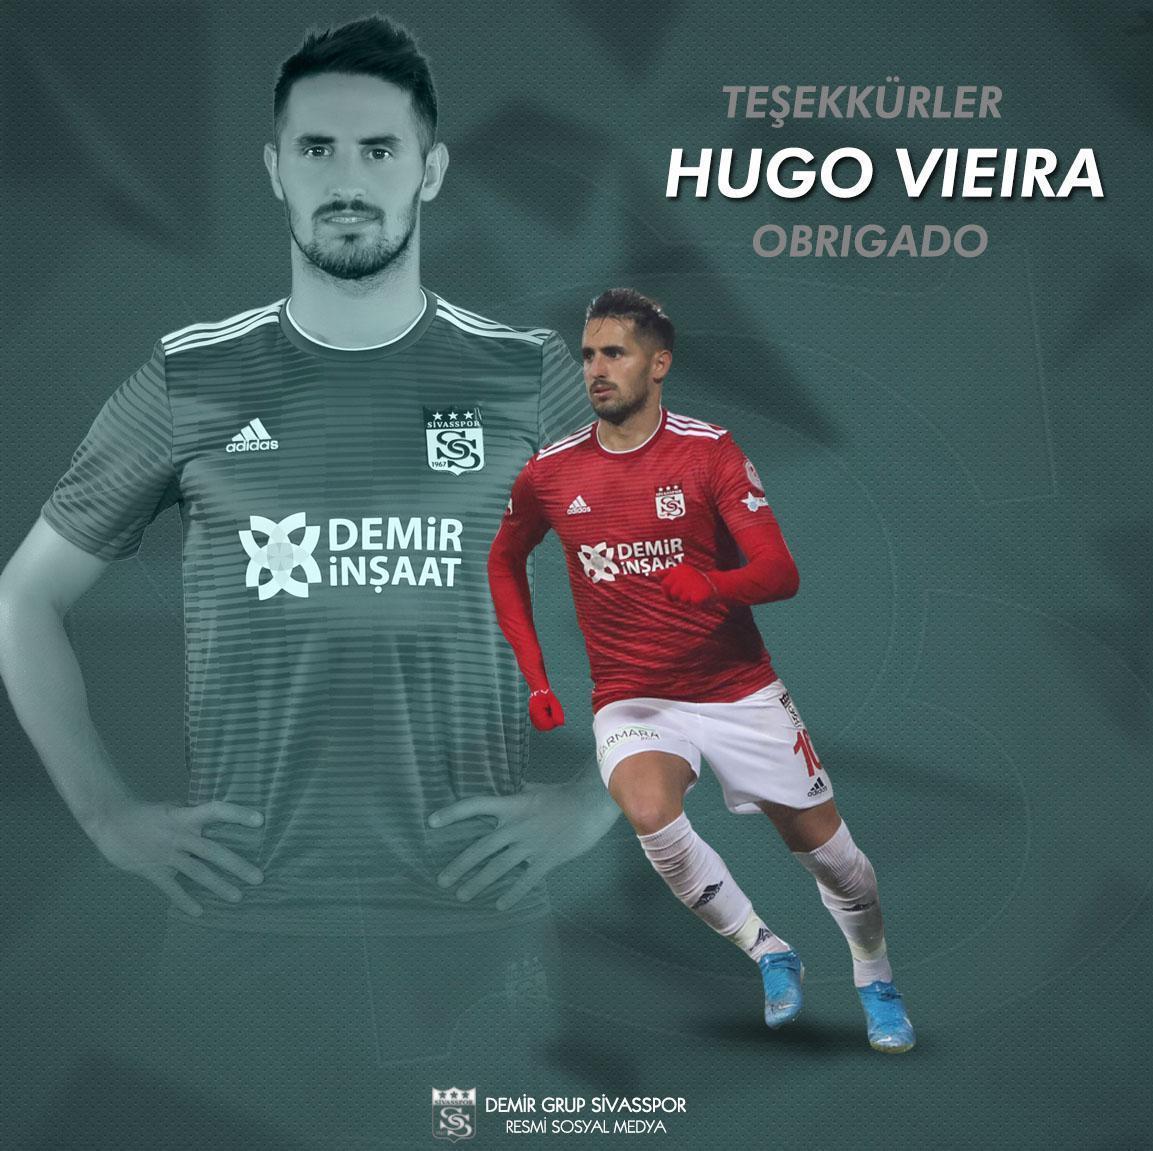 Sivassporda Hugo Vieiranın sözleşmesi feshedildi